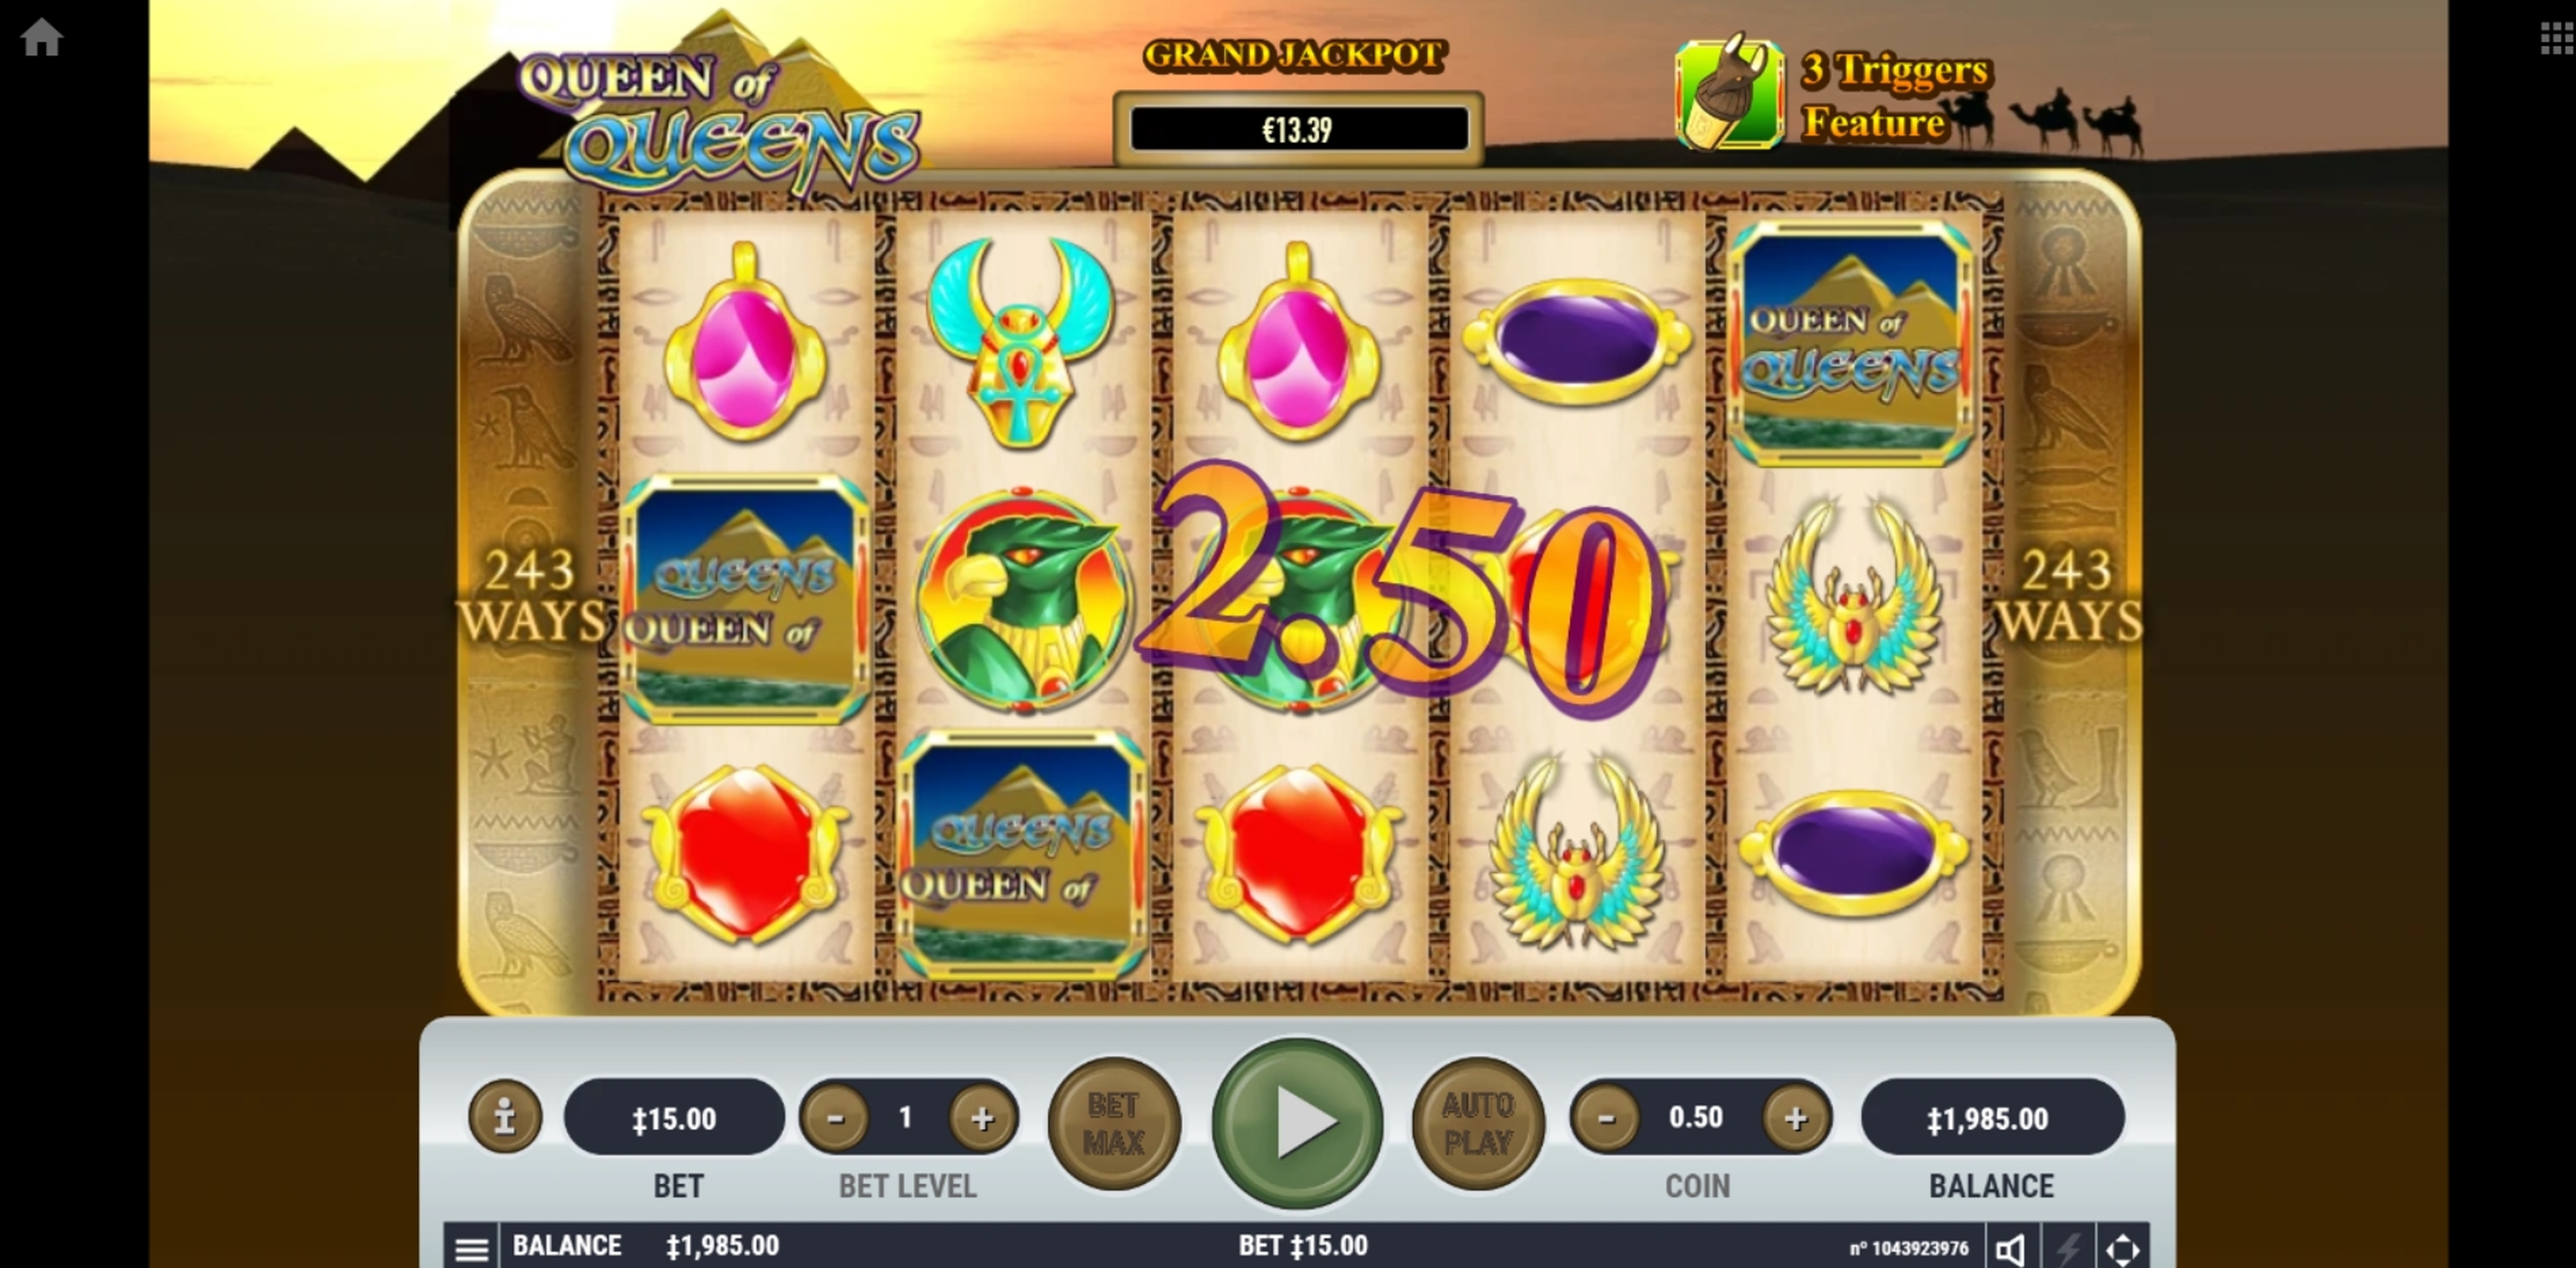 Win Money in Queen of Queens Free Slot Game by Habanero